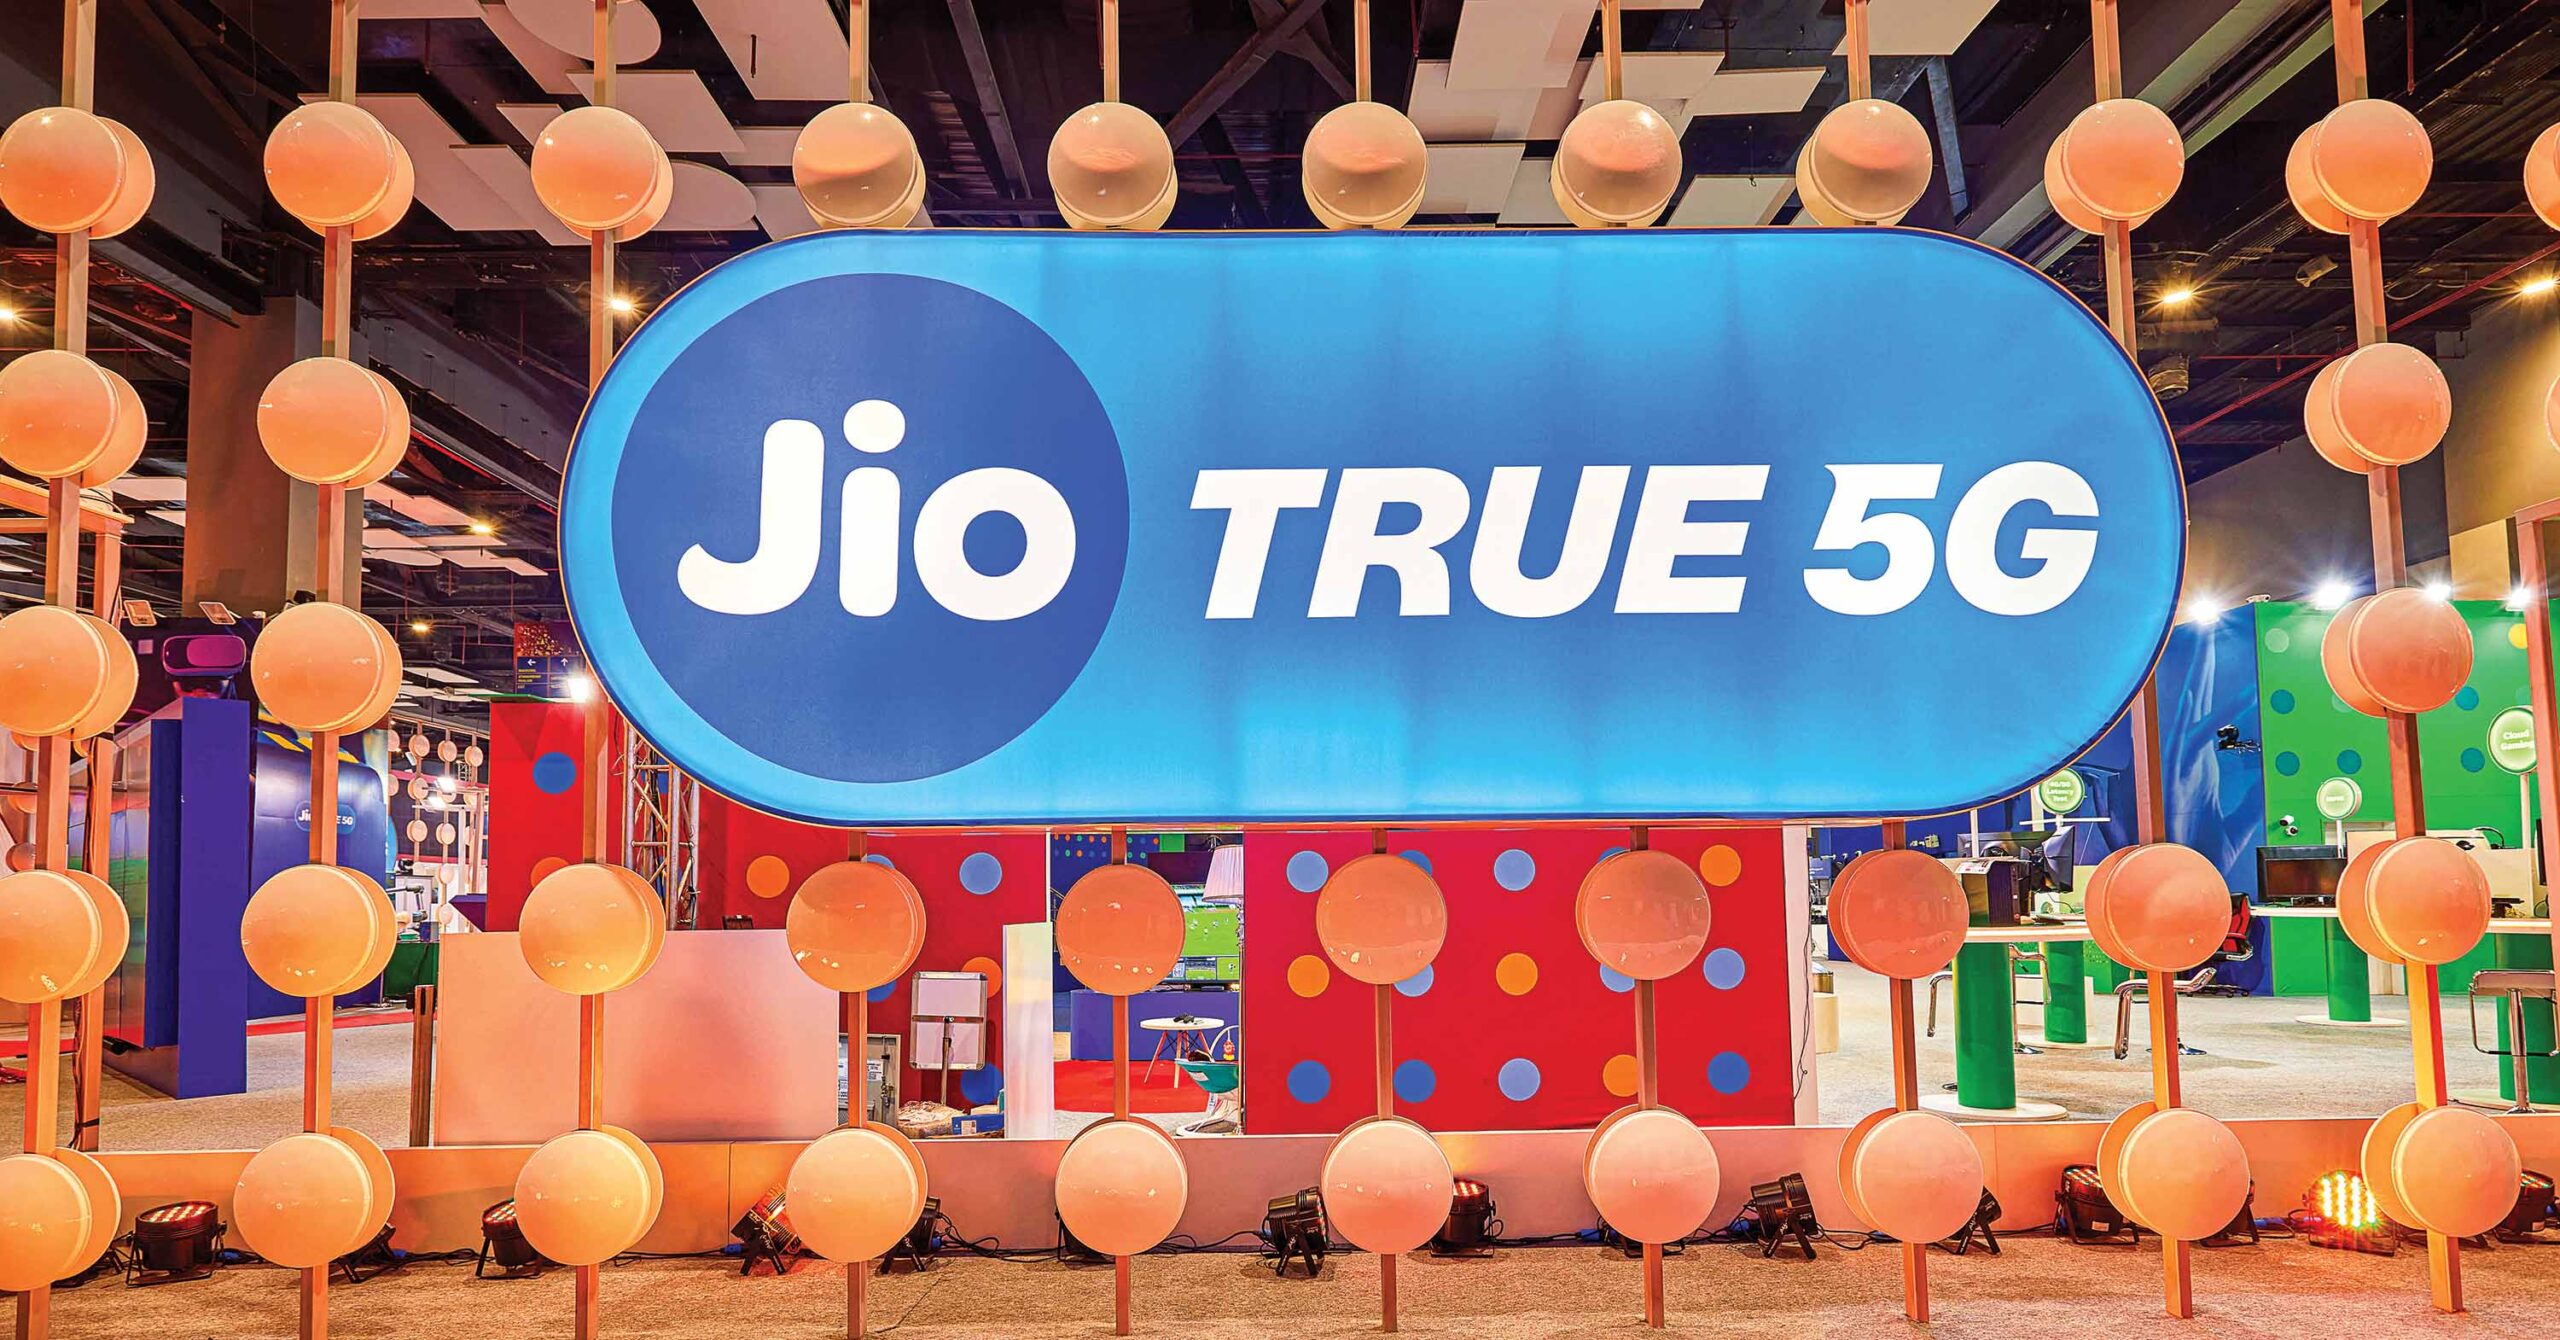 Jio True 5G advertisement